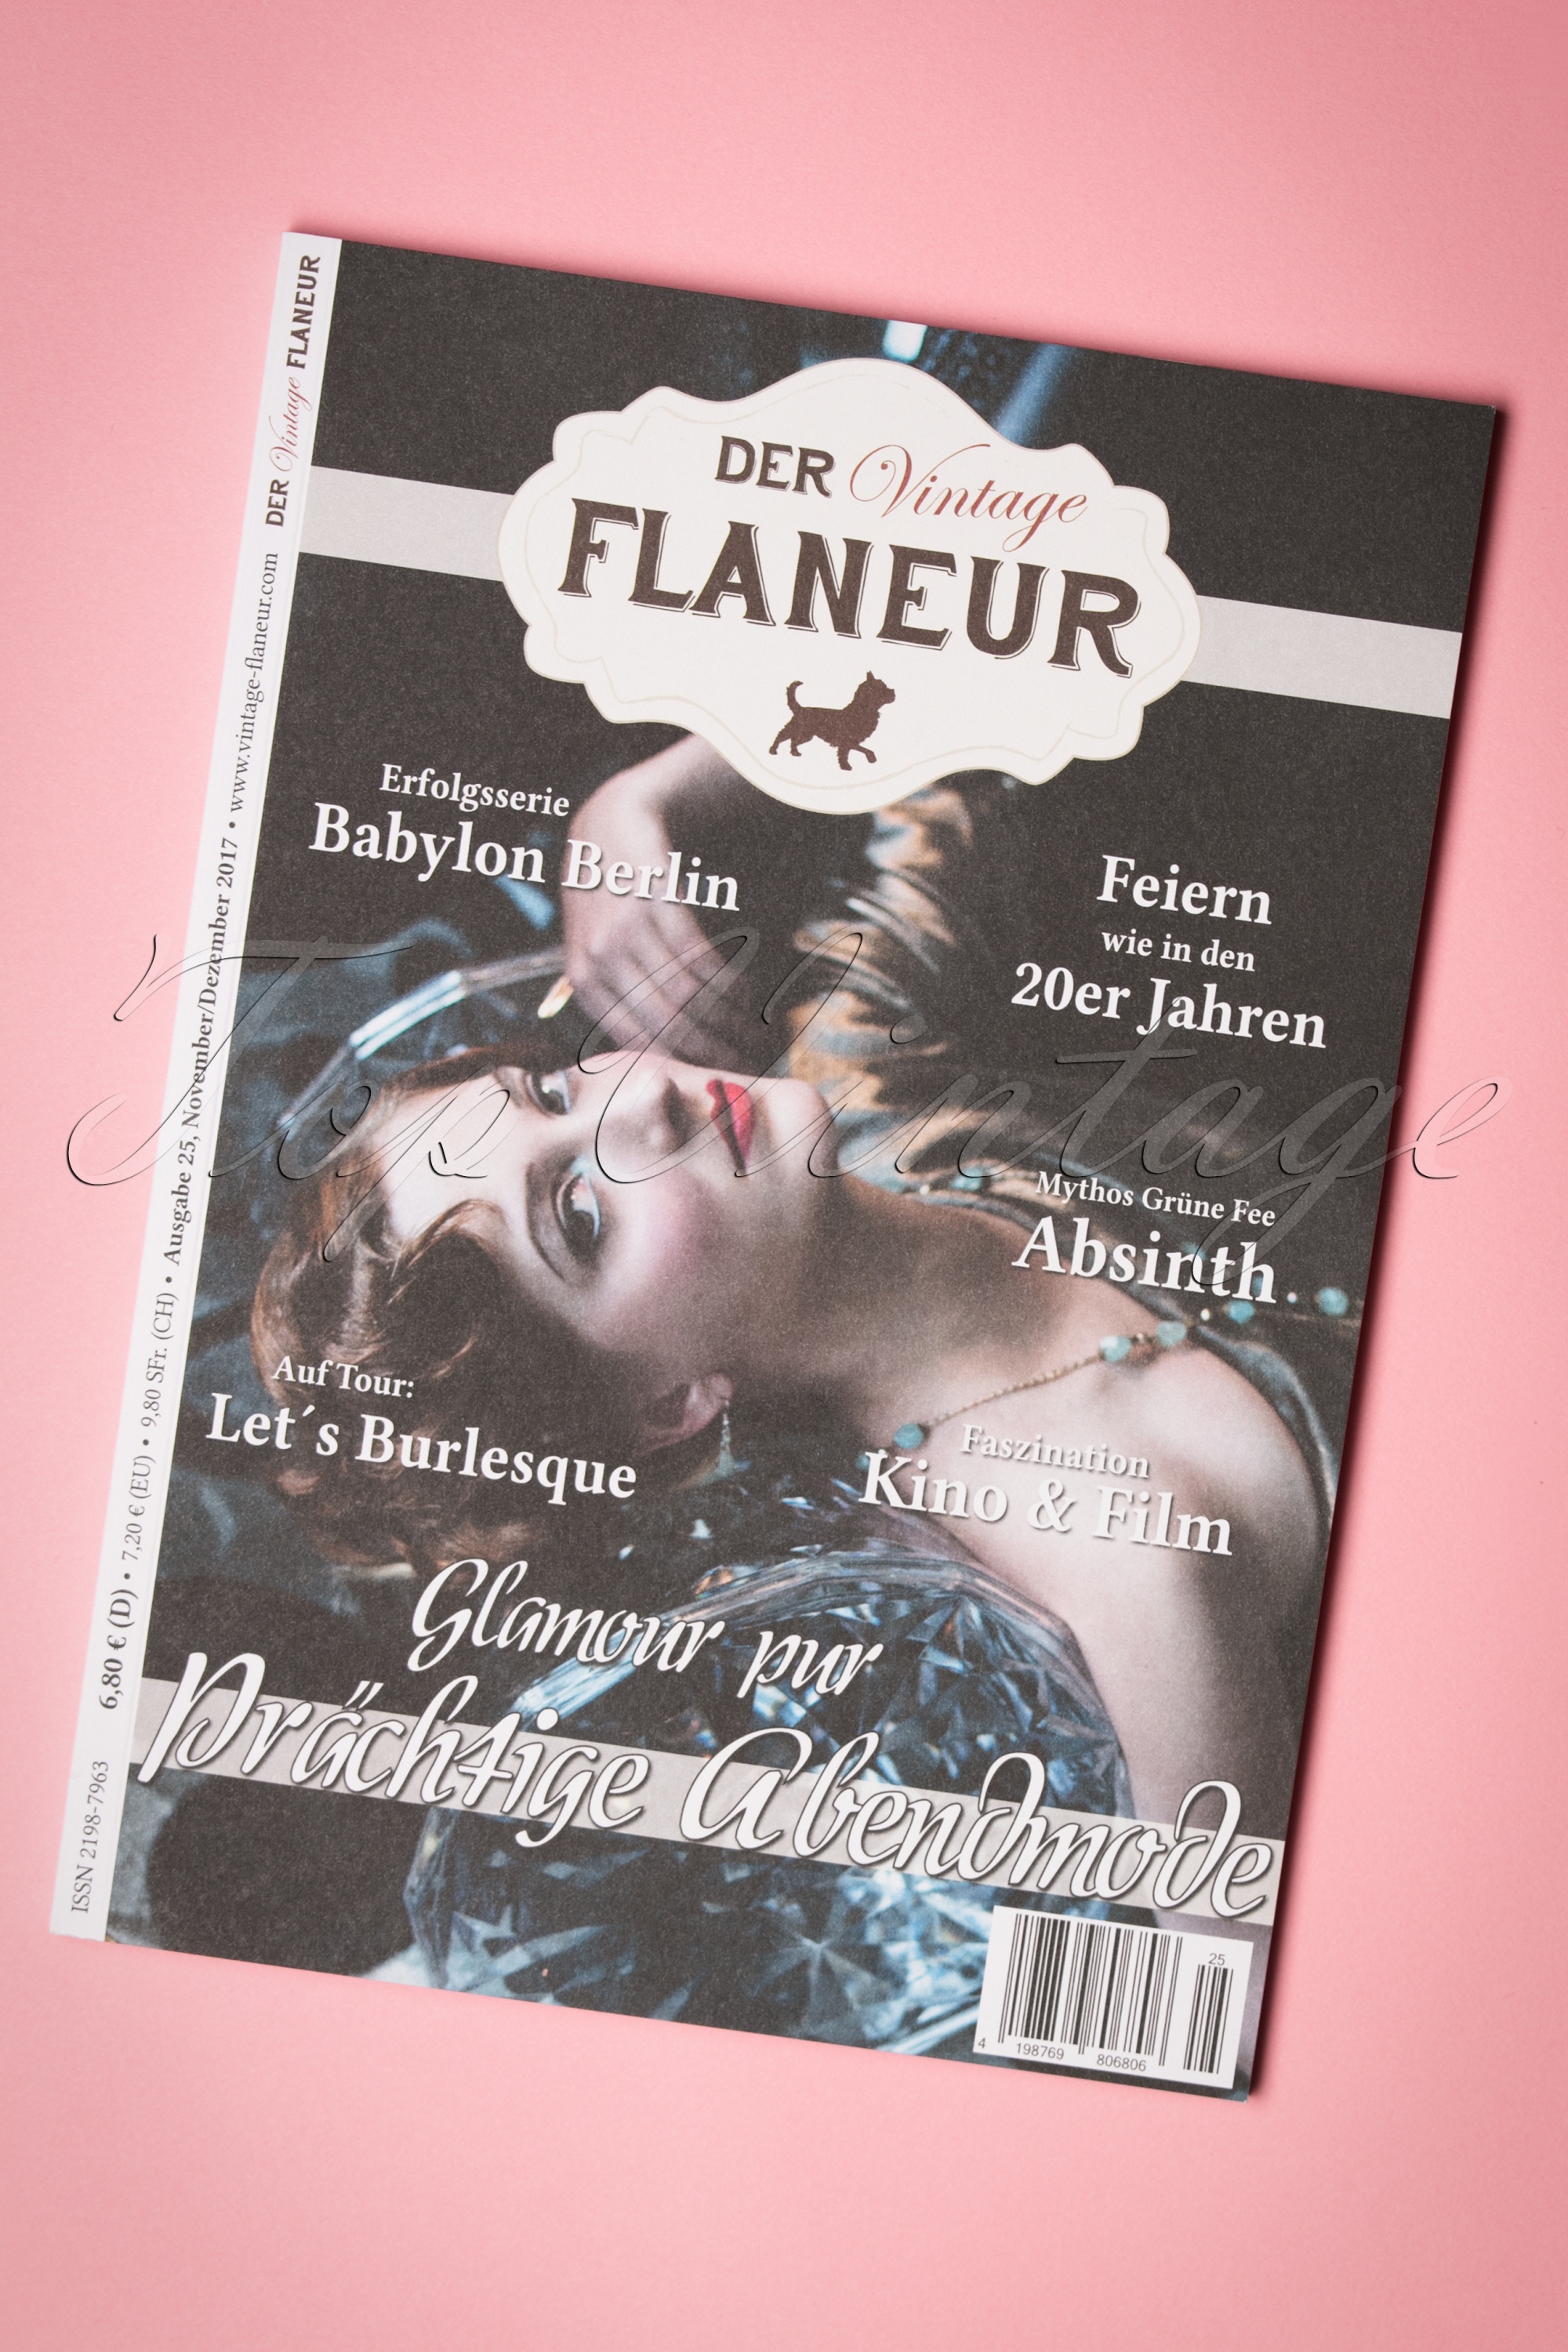 Der Vintage Flaneur - Der Vintage Flaneur Uitgegeven op 25, 2017